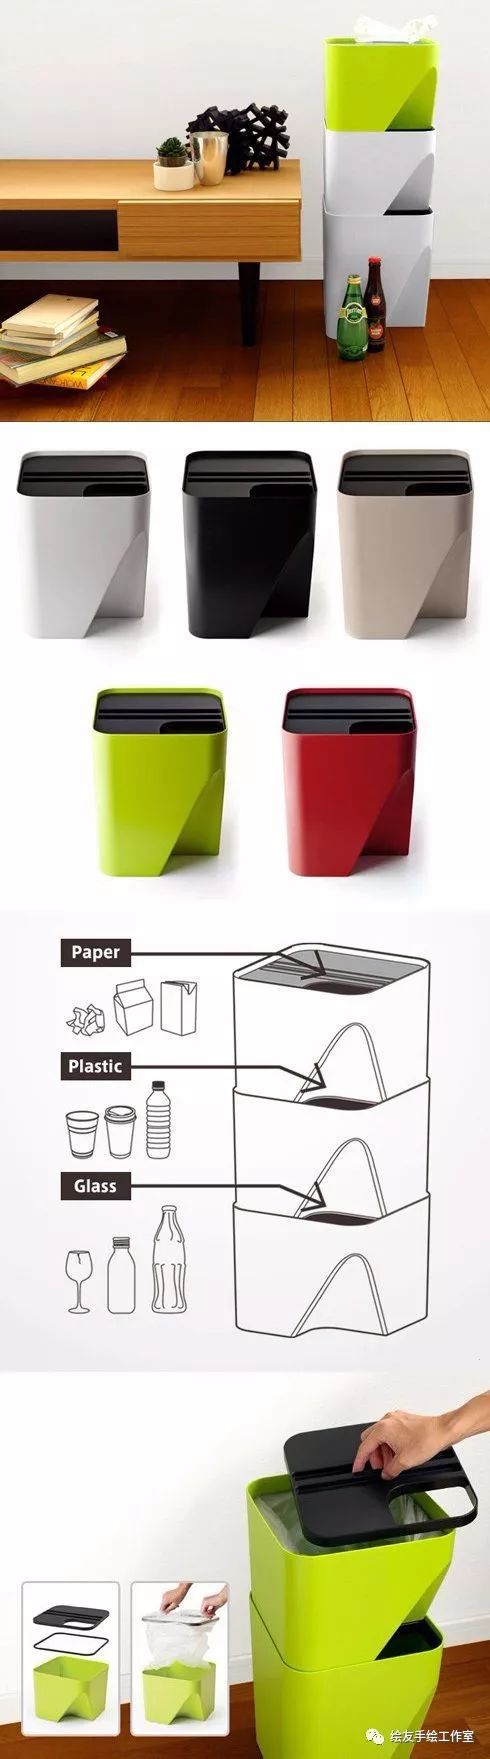 【素材】创意垃圾桶产品设计